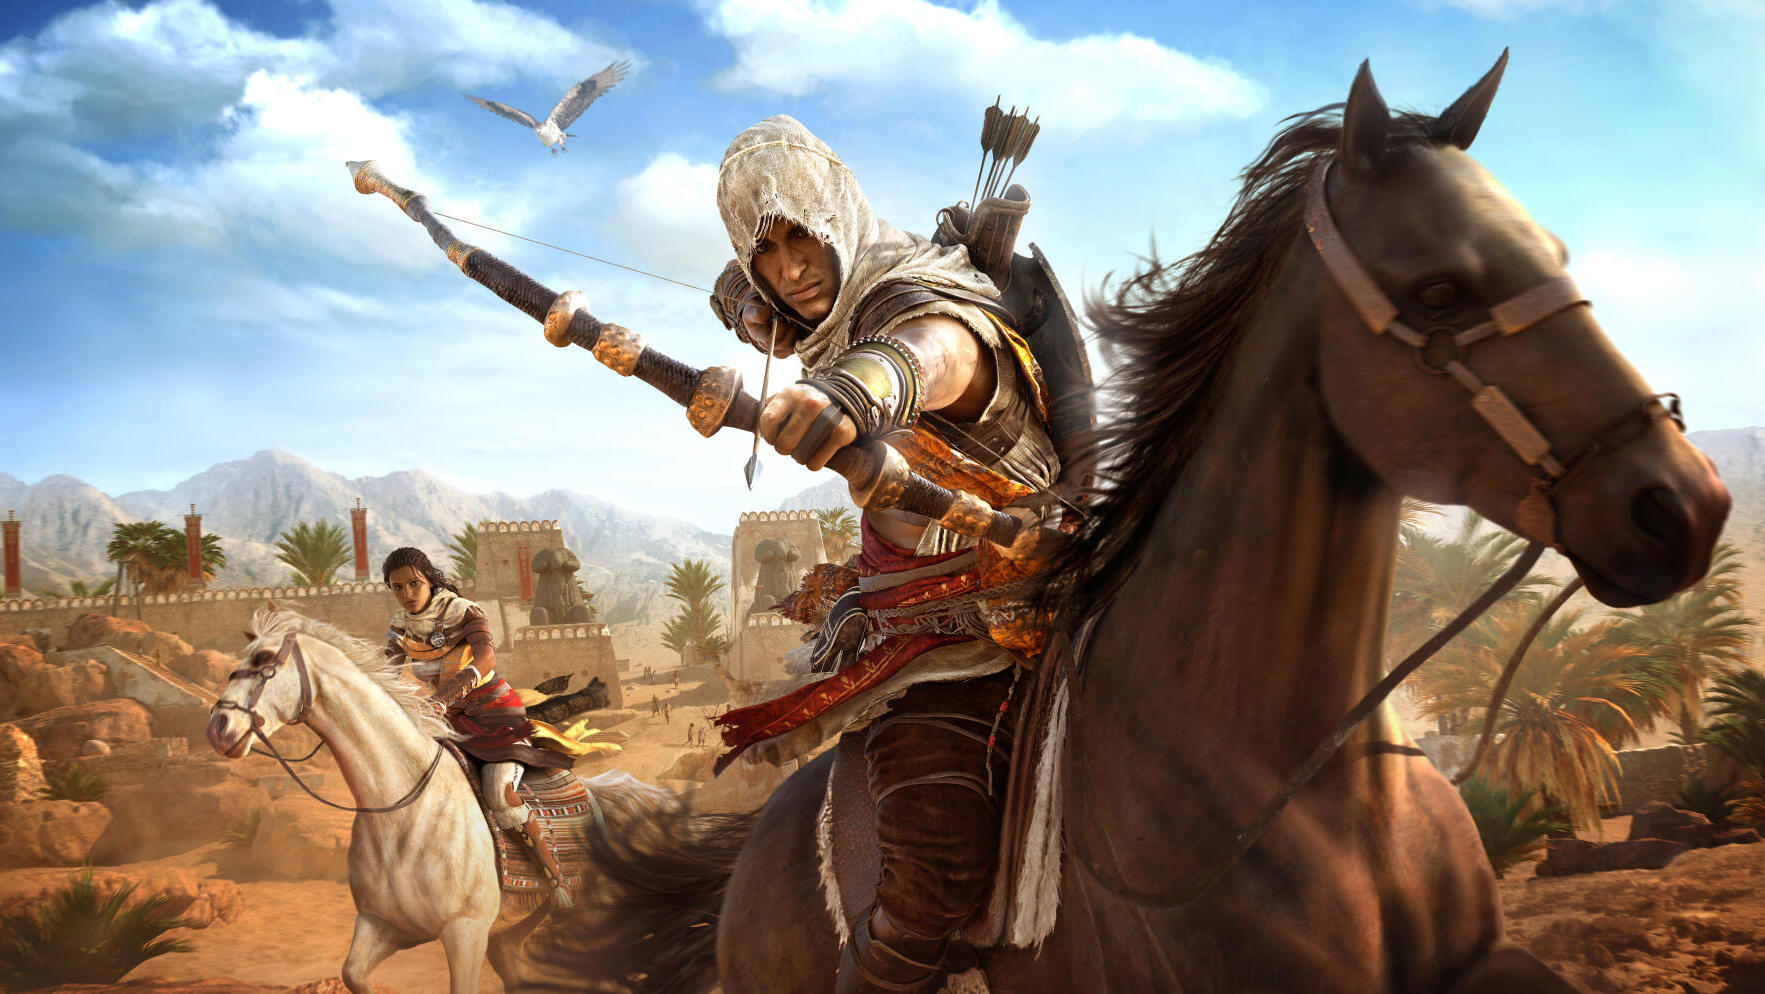 מתוך המשחק Assassin's Creed: Origins אססינס קריד